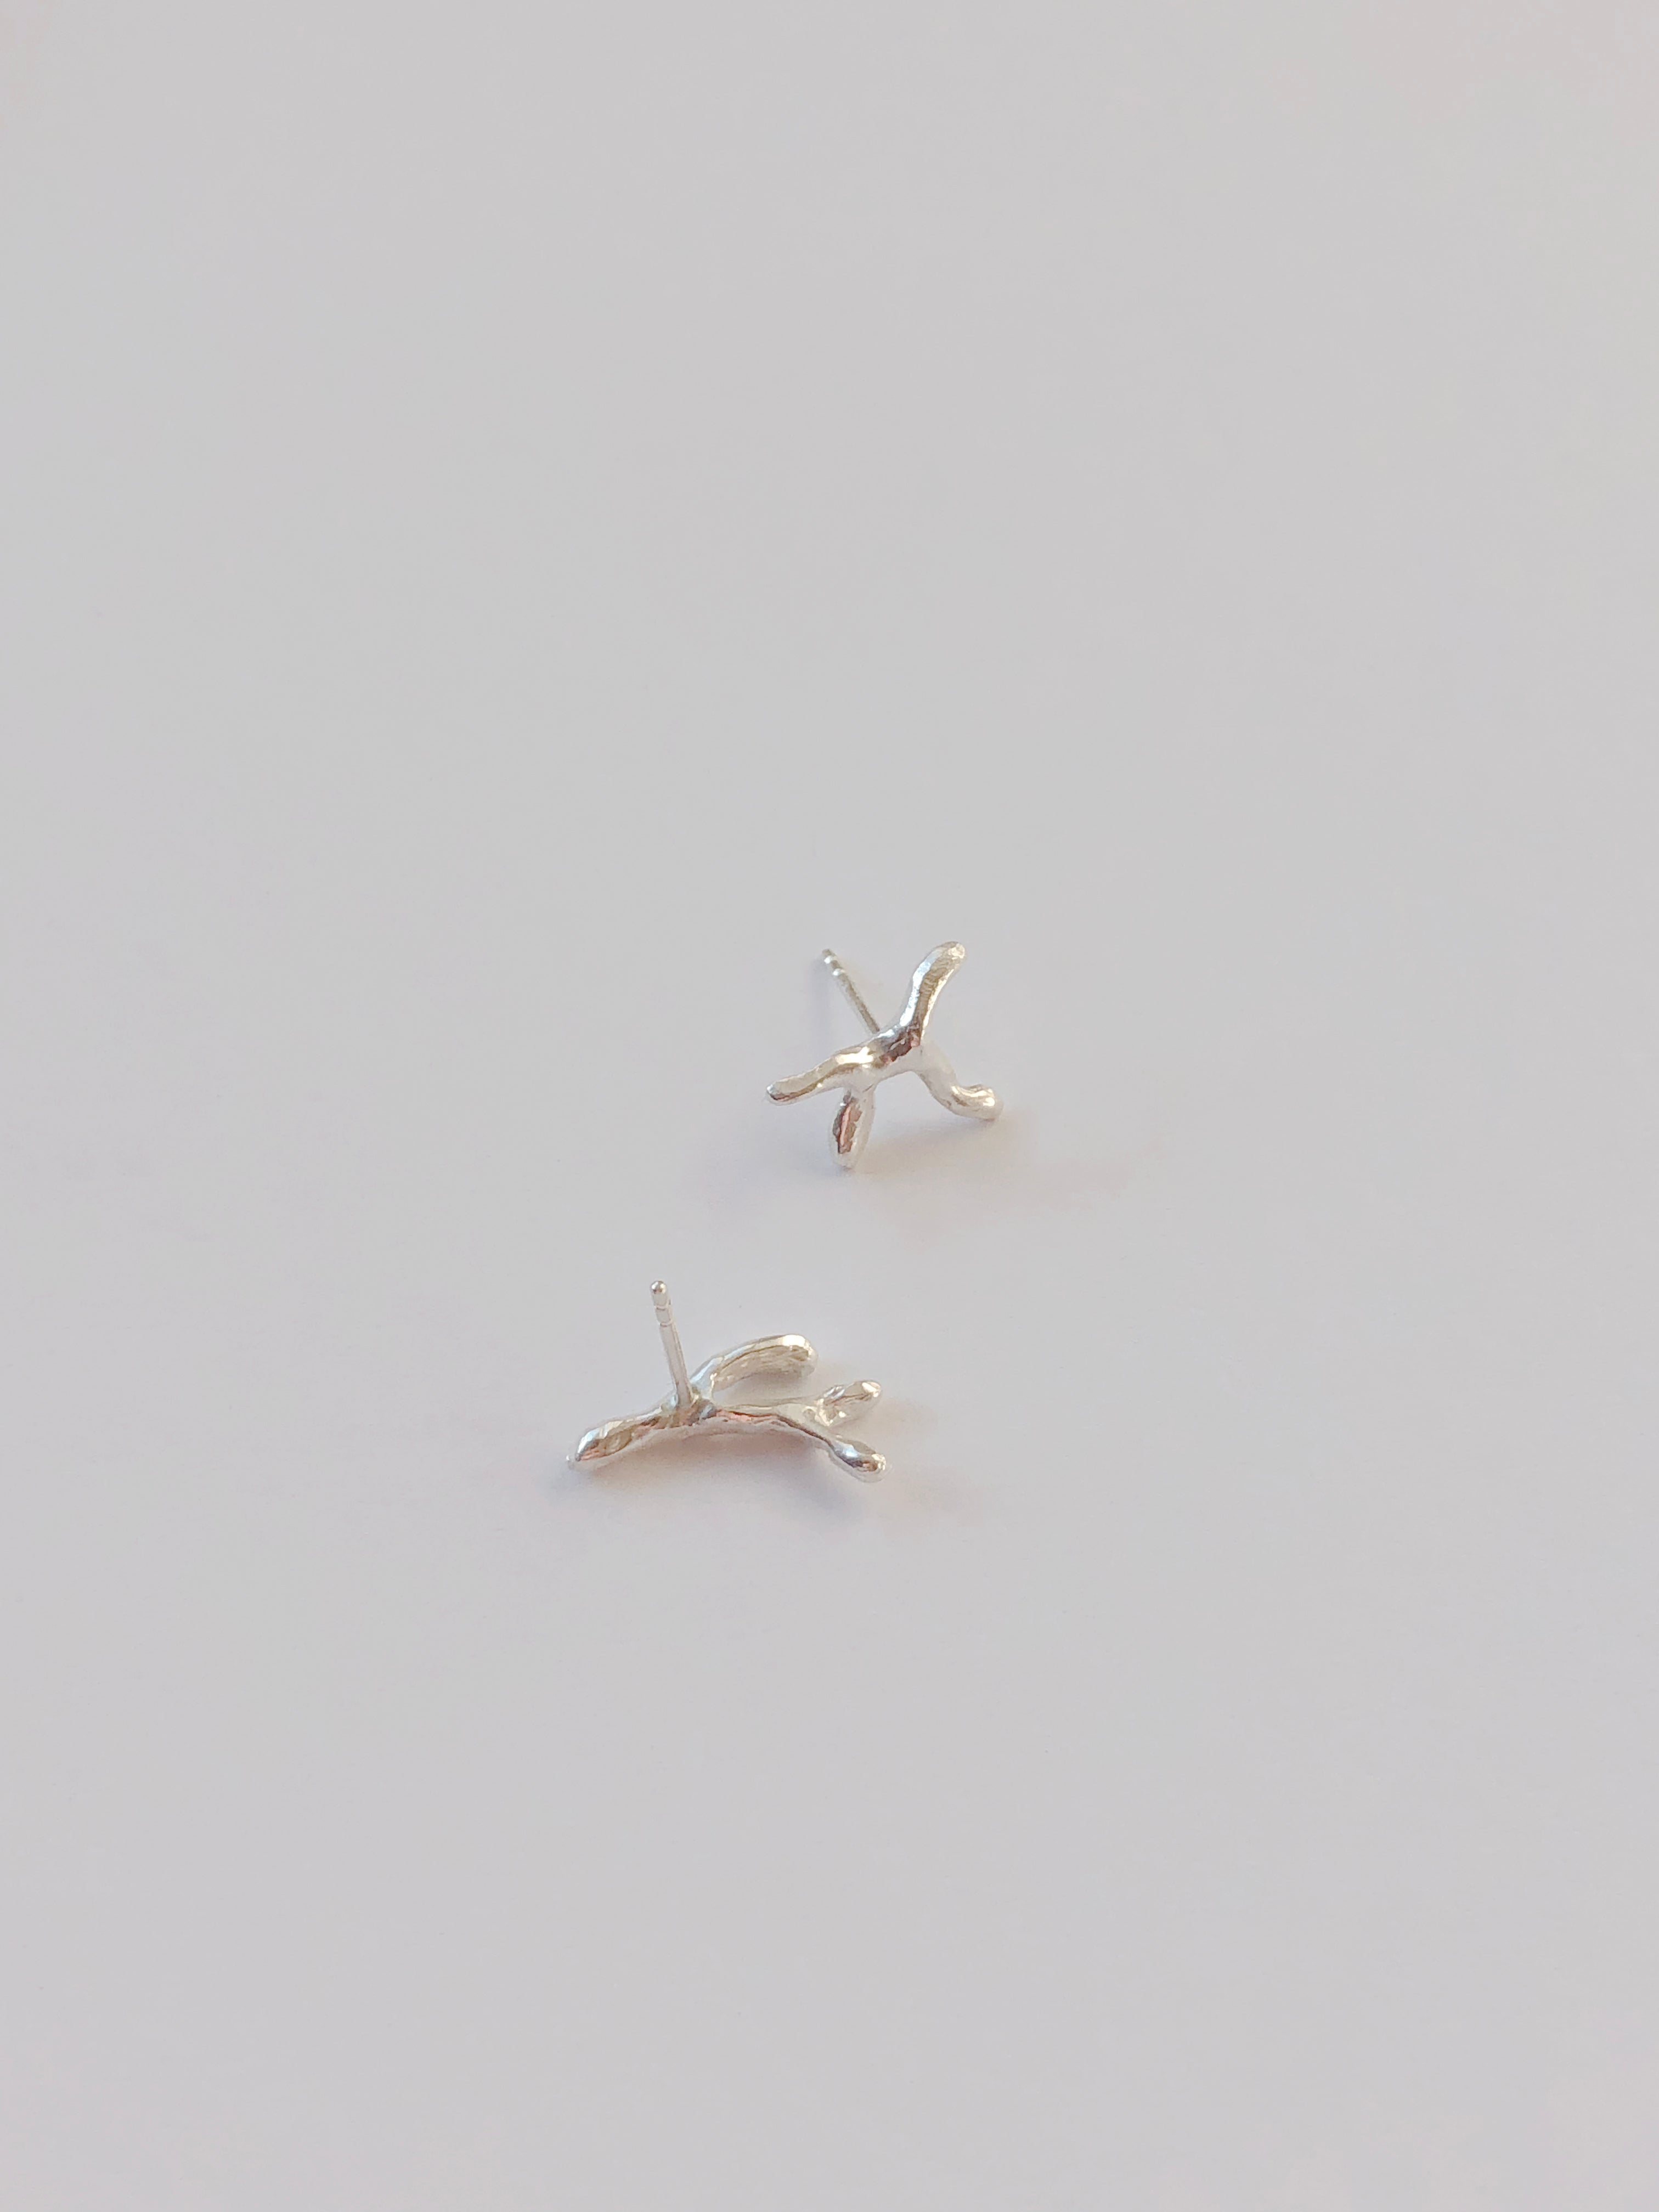 Aros | Earrings   S•01